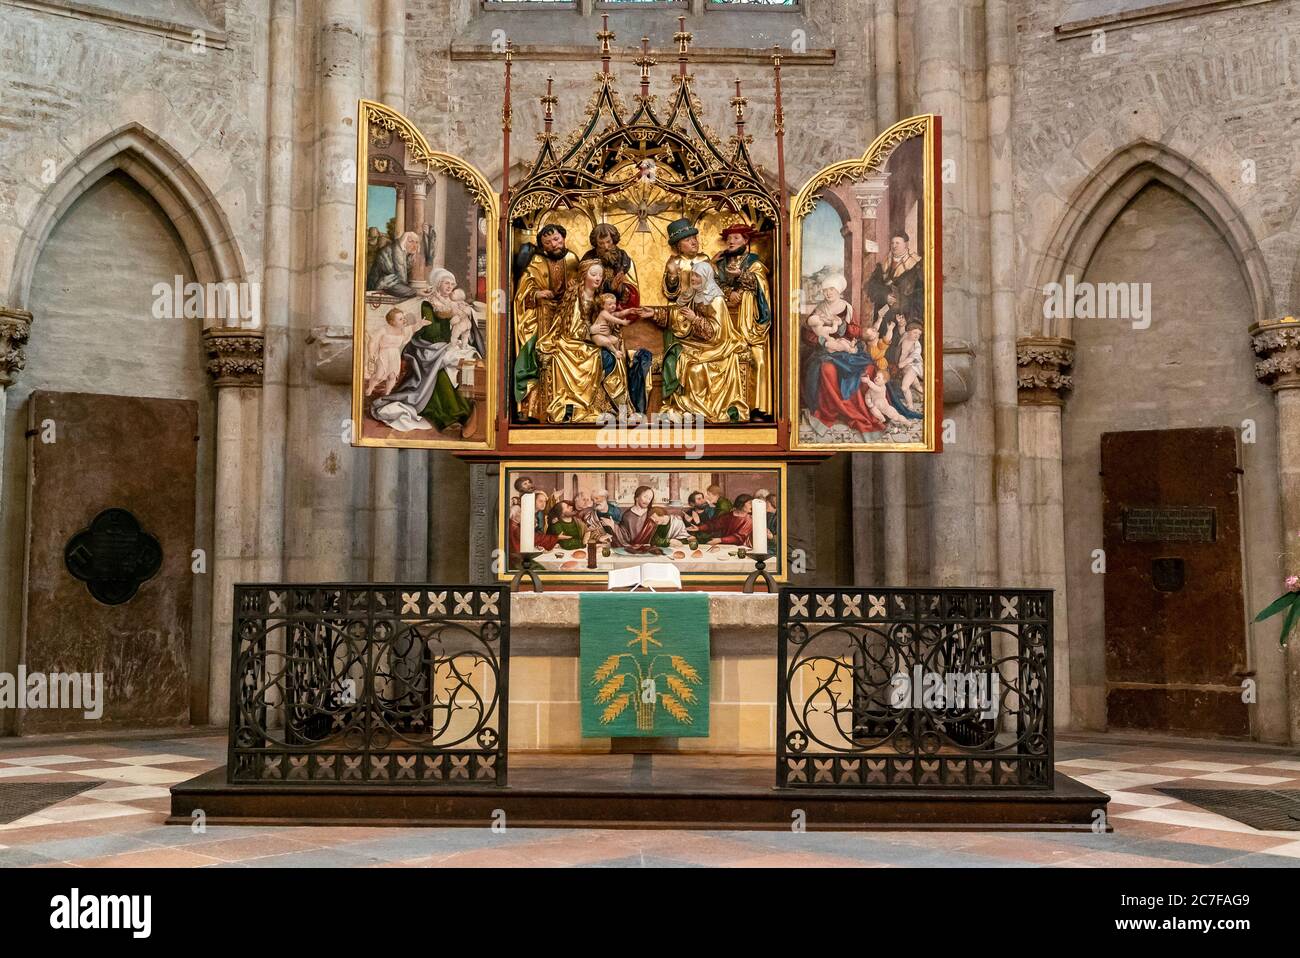 Ulm, BW / Germania - 14 luglio 2020: Vista dell'altare maggiore nella cattedrale di Ulm creato b Martin Schaffner nel 1521 Foto Stock